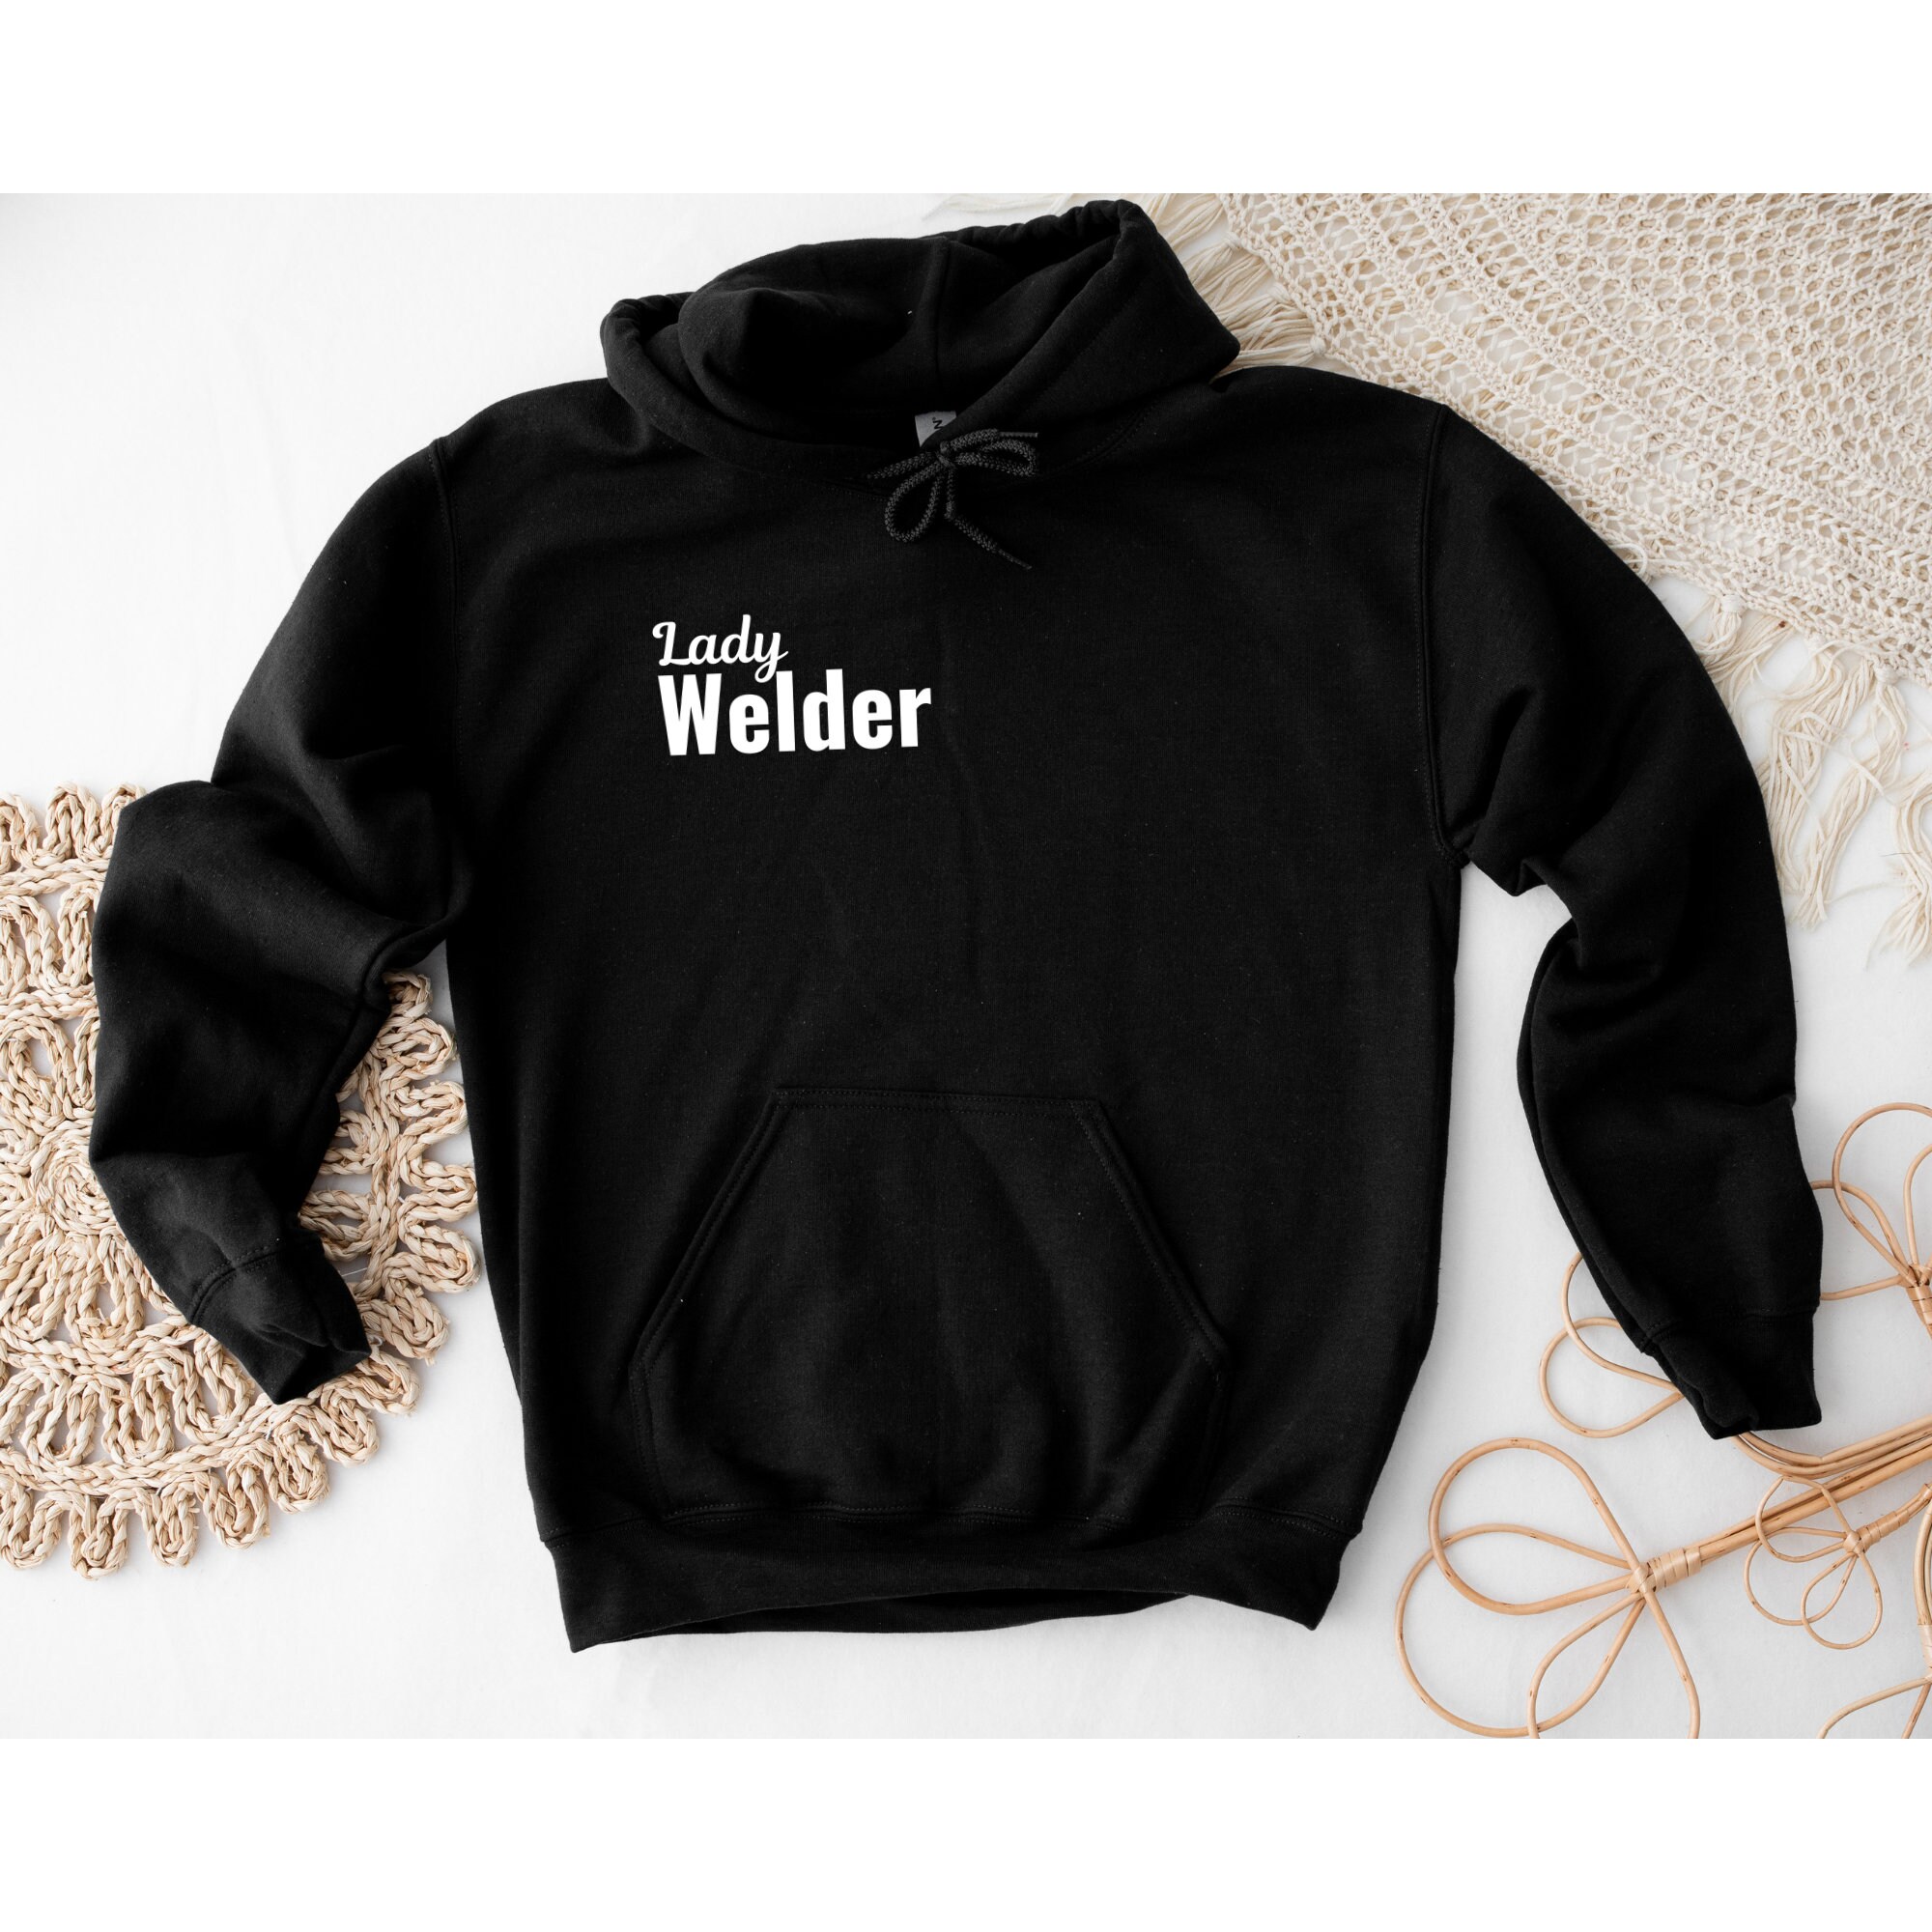 Lady welder hoodies for sale  